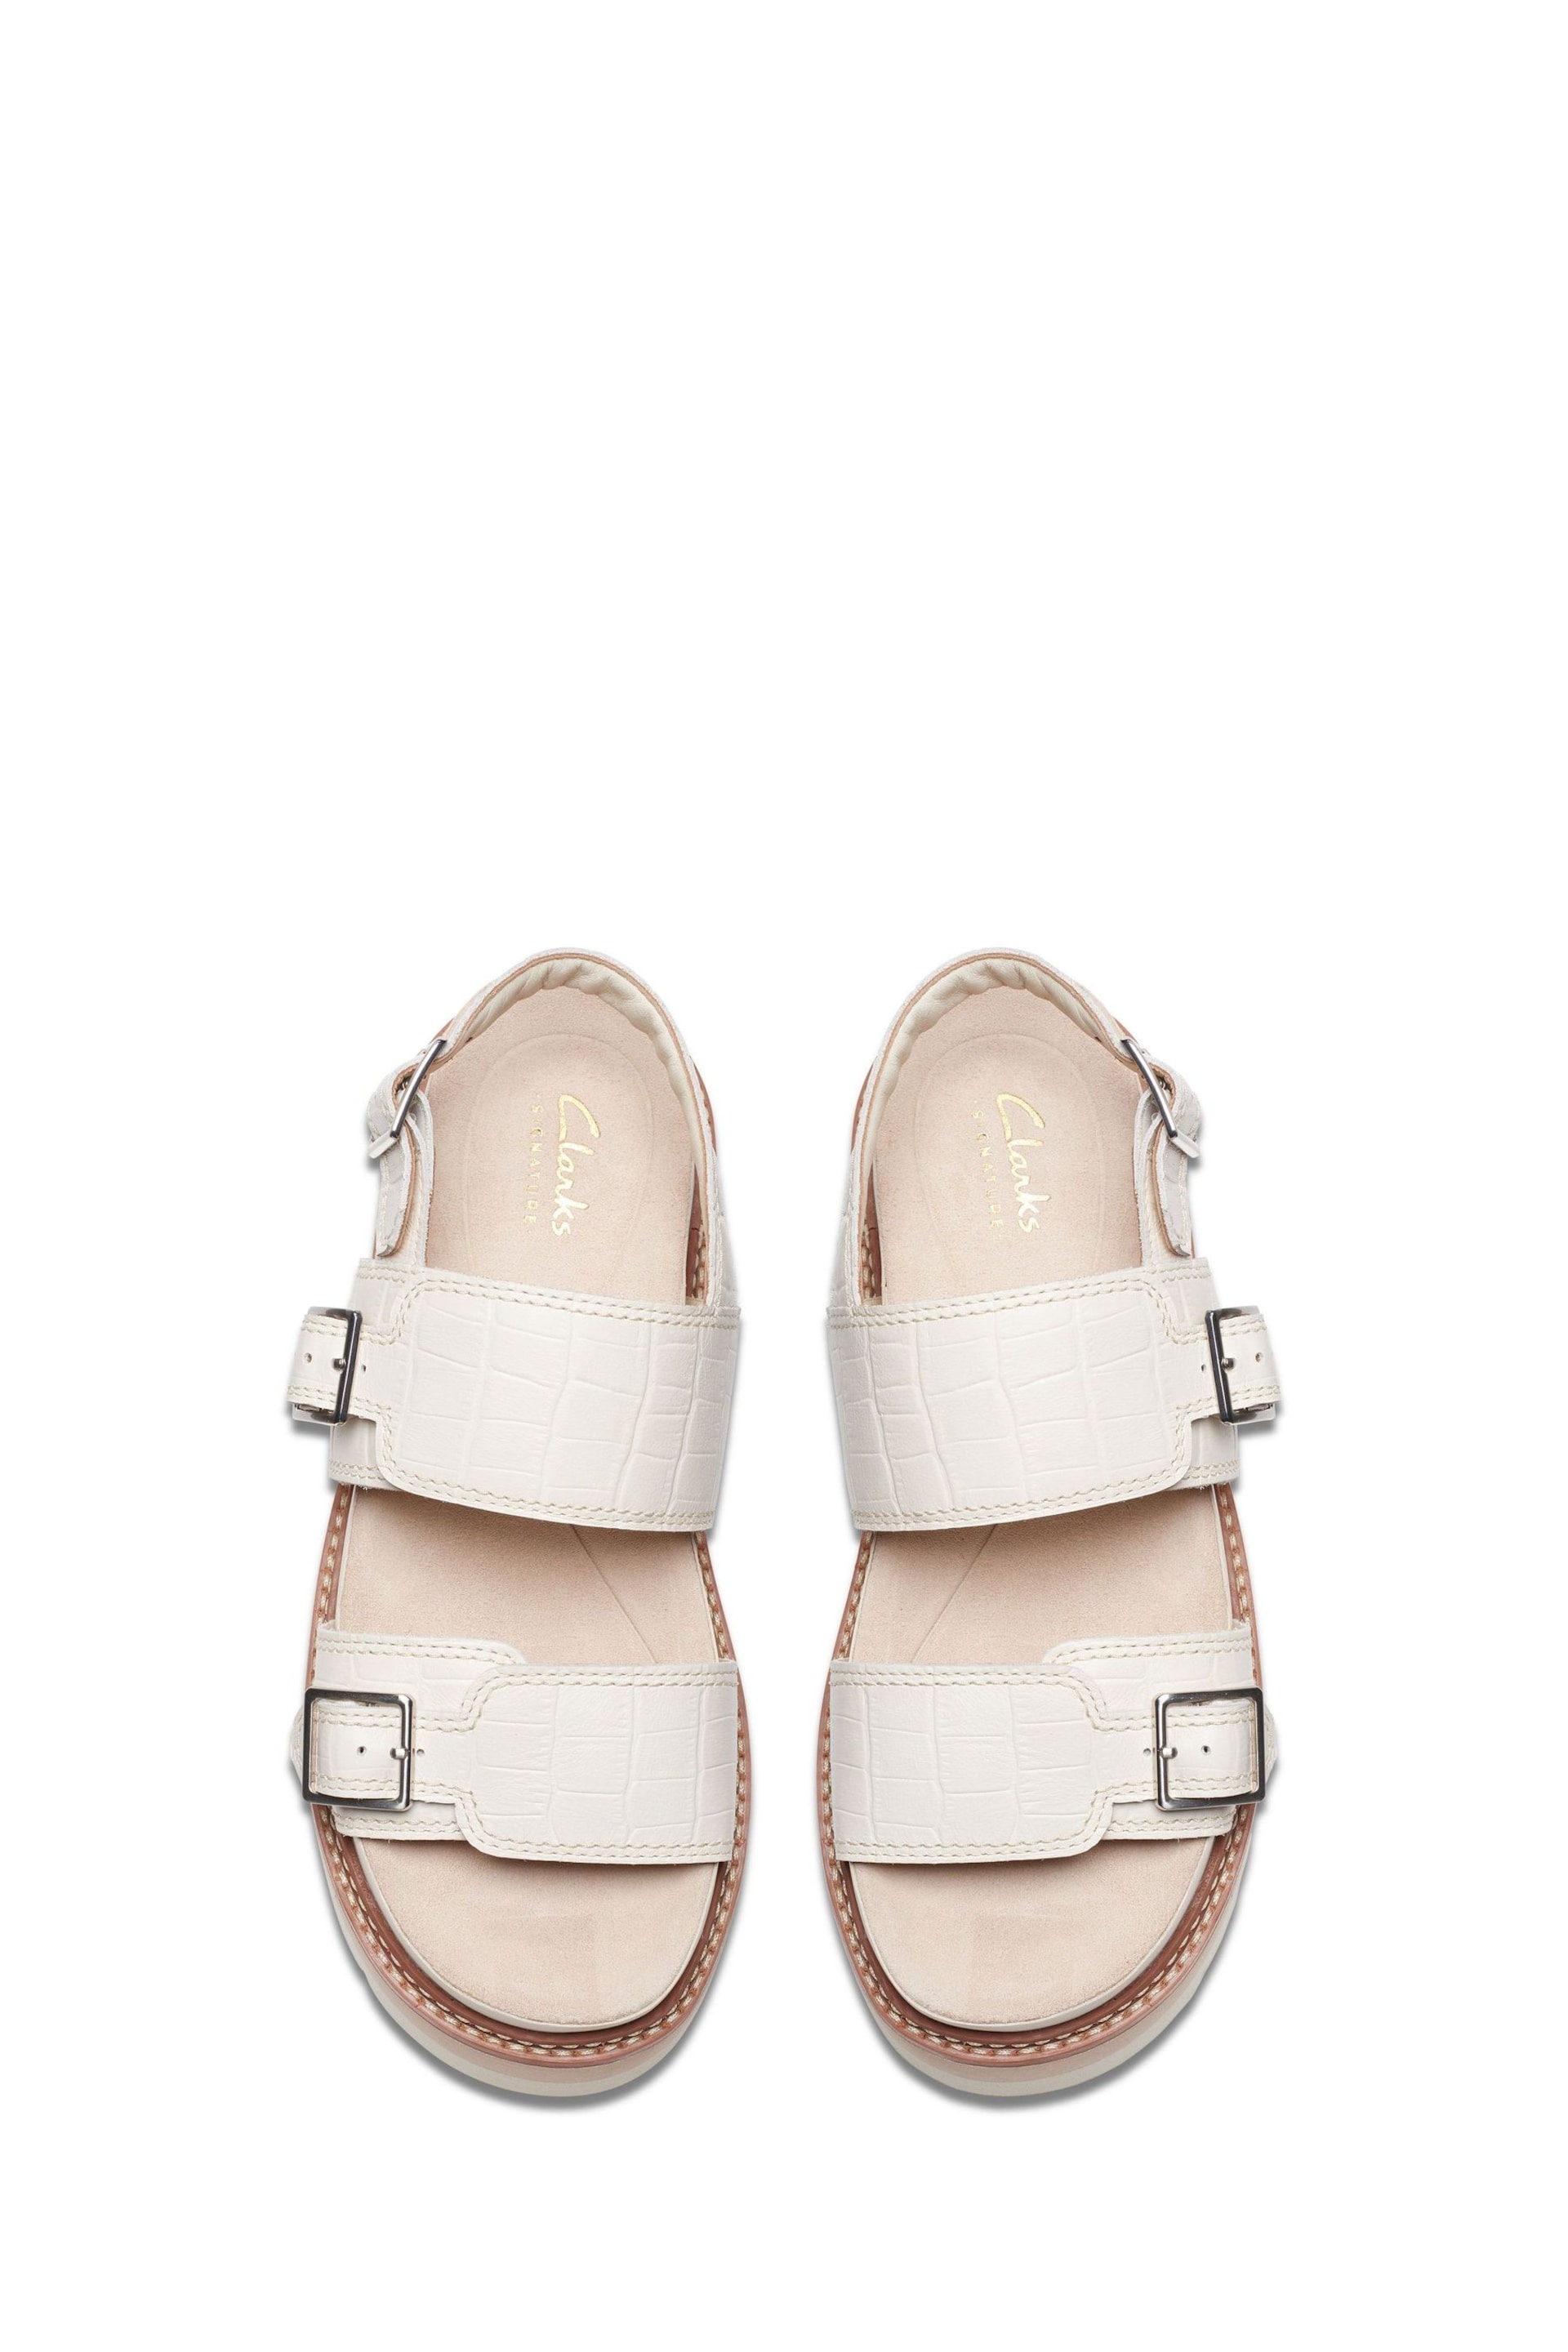 Clarks Cream Interest Orianna Glide Sandals - Image 5 of 7